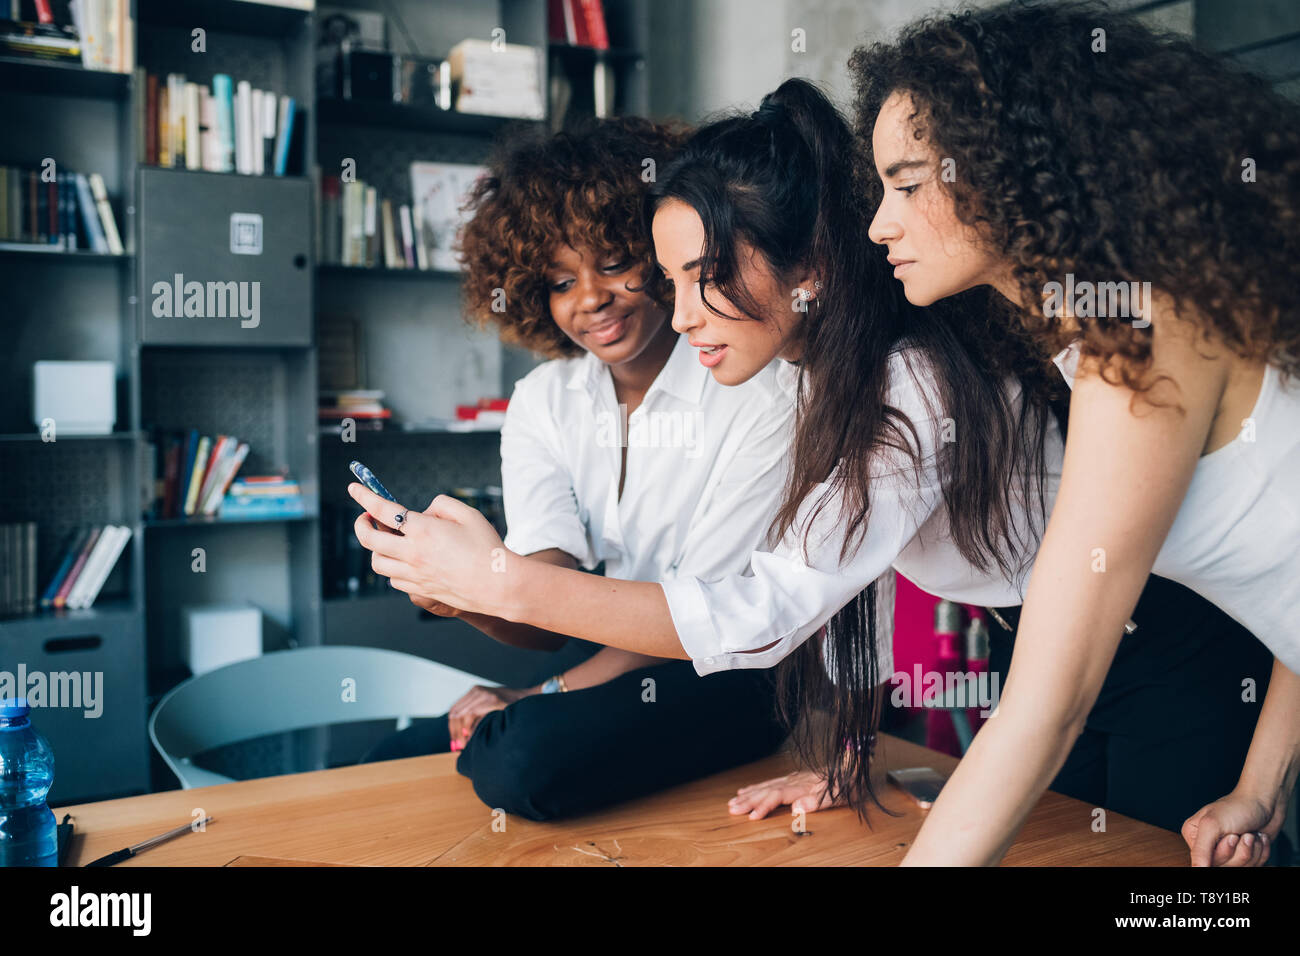 Mujeres jóvenes jugando con el smartphone en una moderna oficina - ingeniosos, creatividad, interacción Foto de stock